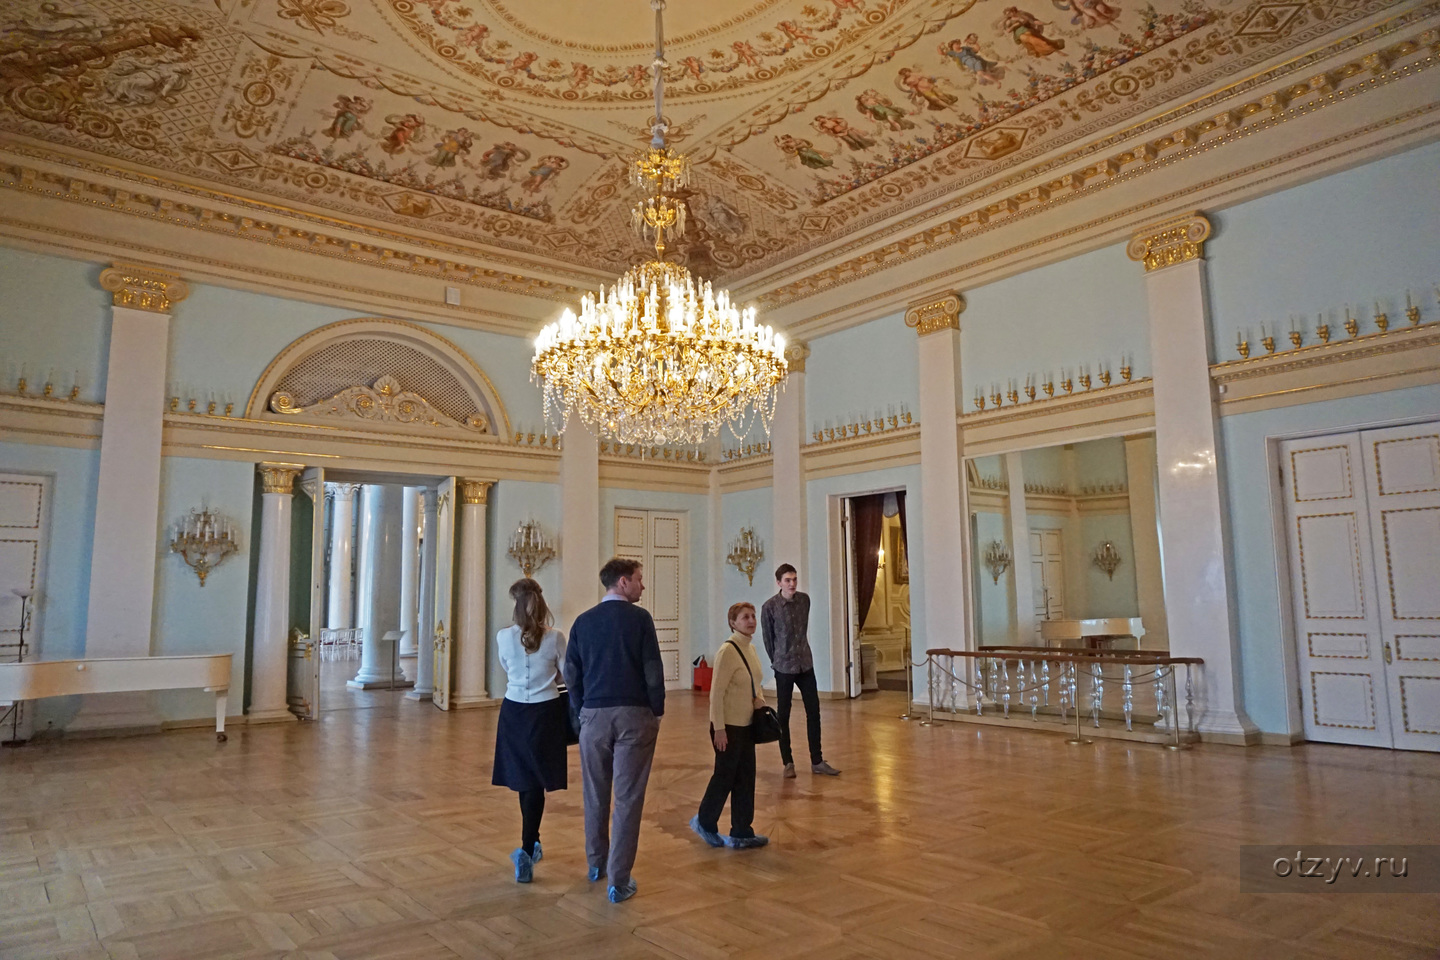 Юсуповский дворец в Санкт-Петербурге танцевальный зал